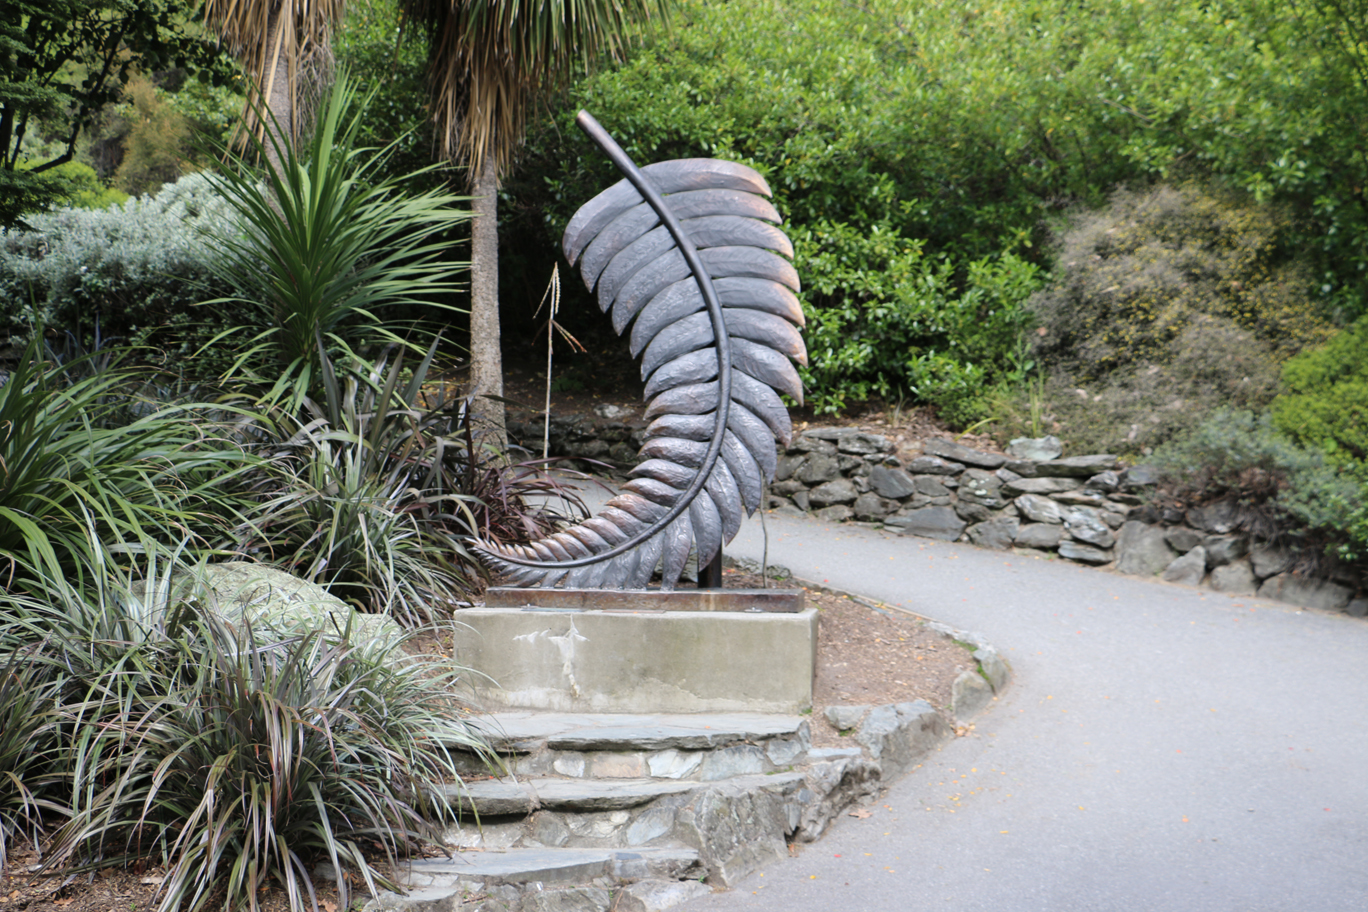 La "silver fern", emblème de la Nouvelle-Zélande. On comprend vite pourquoi.